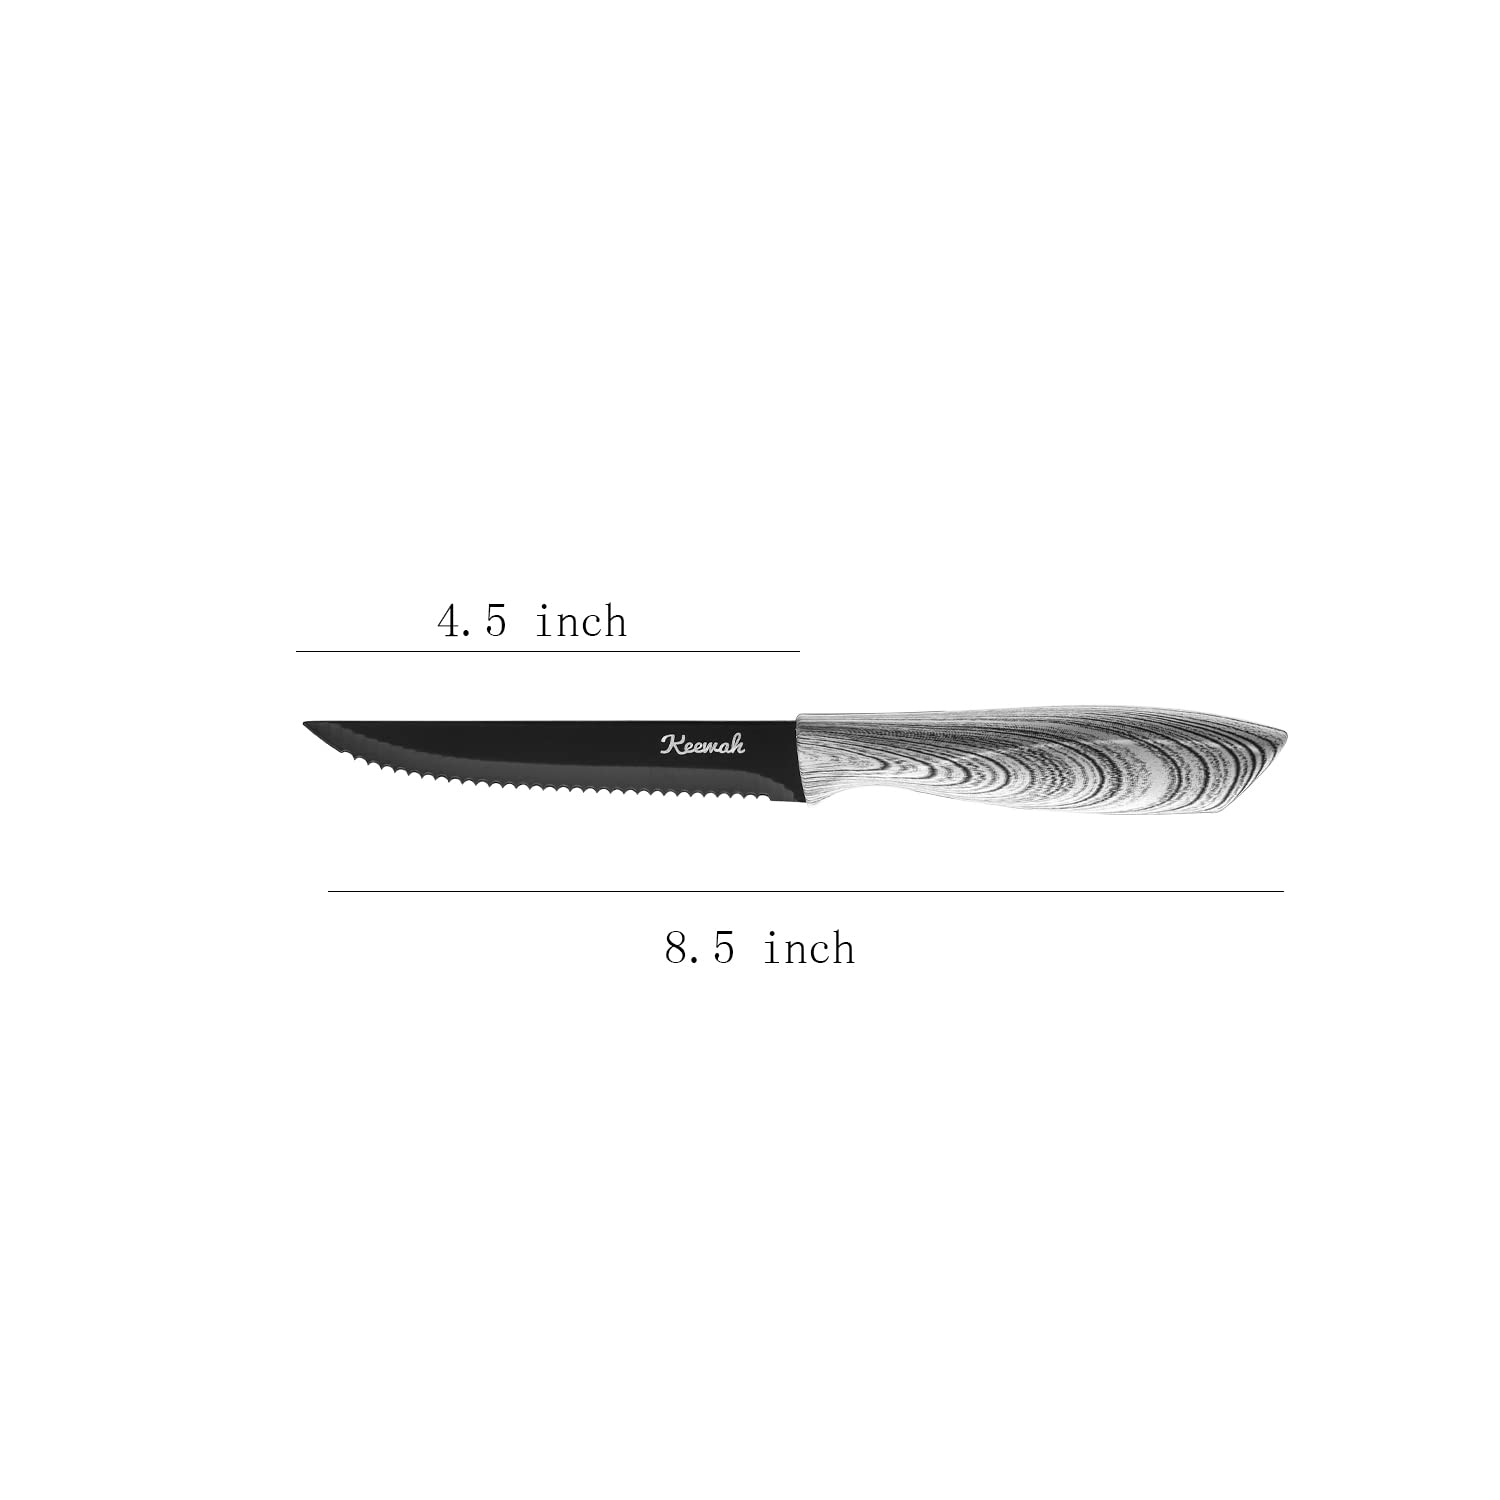 Keewah Steak Knife Set of 8, Stainless Steel Serrated Steak Knives, White Wood Texture Handle